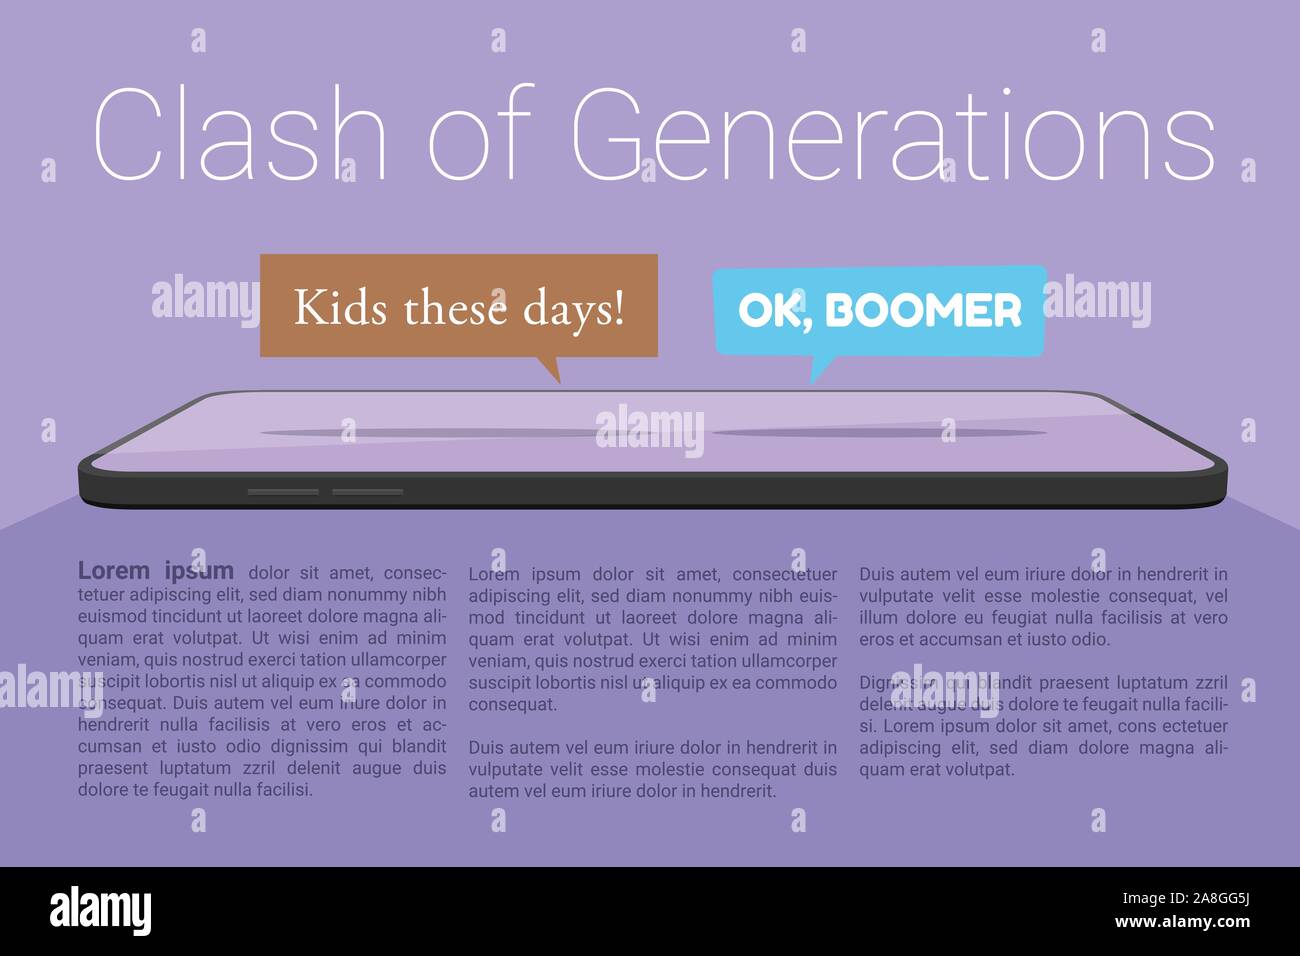 Der Vektor der Smartphone- und zwei chat Blasen, OK Boomer und Kinder diesen Tag, stellt soziale Medien Konflikt zwischen Baby boomers und jüngeren Generationen Stock Vektor